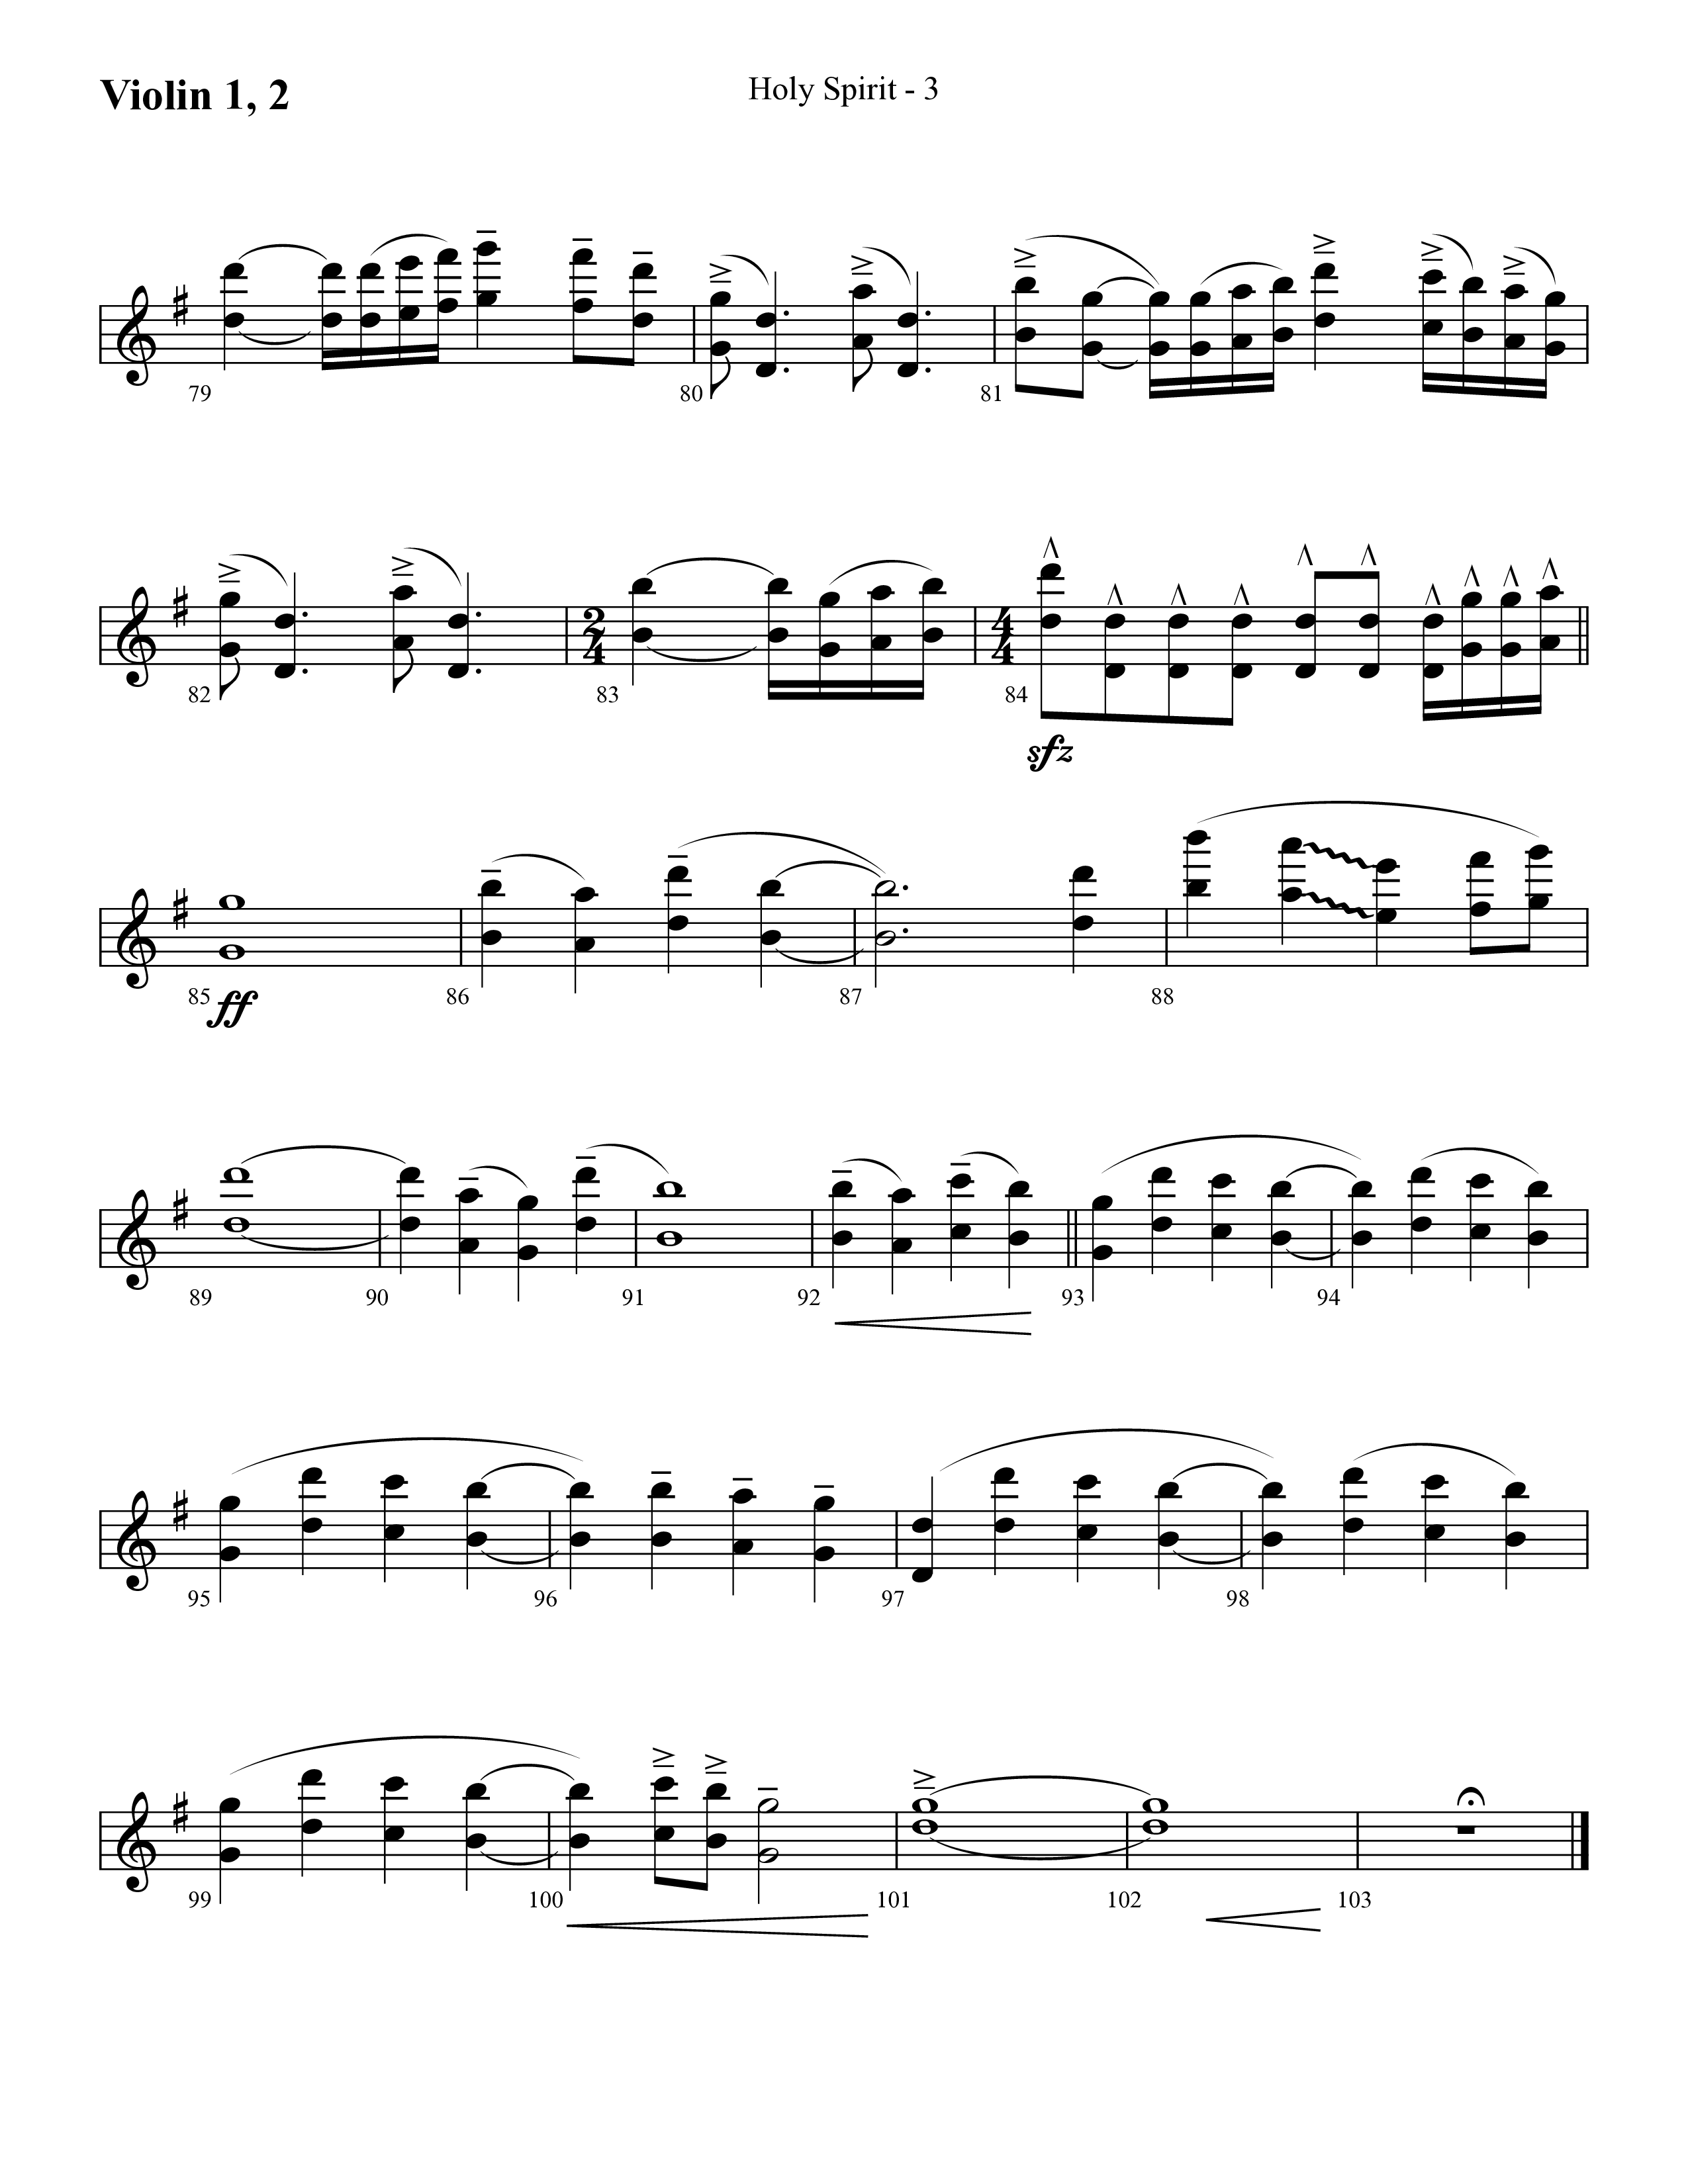 Holy Spirit  (Choral Anthem SATB) Violin 1/2 (Lifeway Choral / Arr. Cliff Duren)